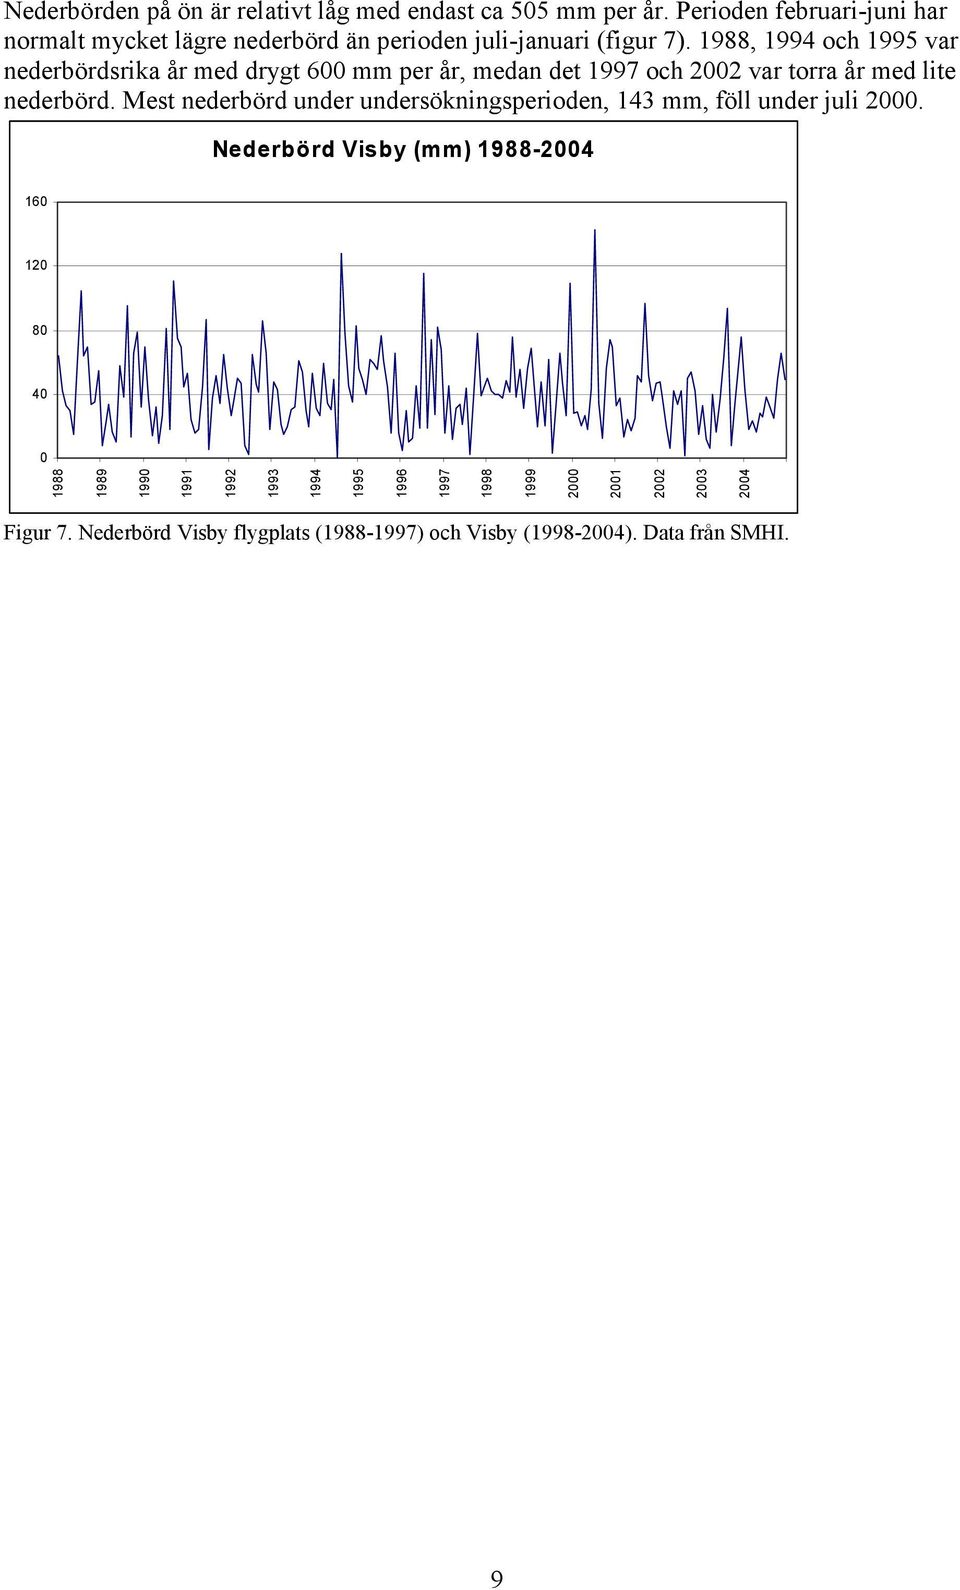 , och 199 var nederbördsrika år med drygt mm per år, medan det 1997 och var torra år med lite nederbörd.